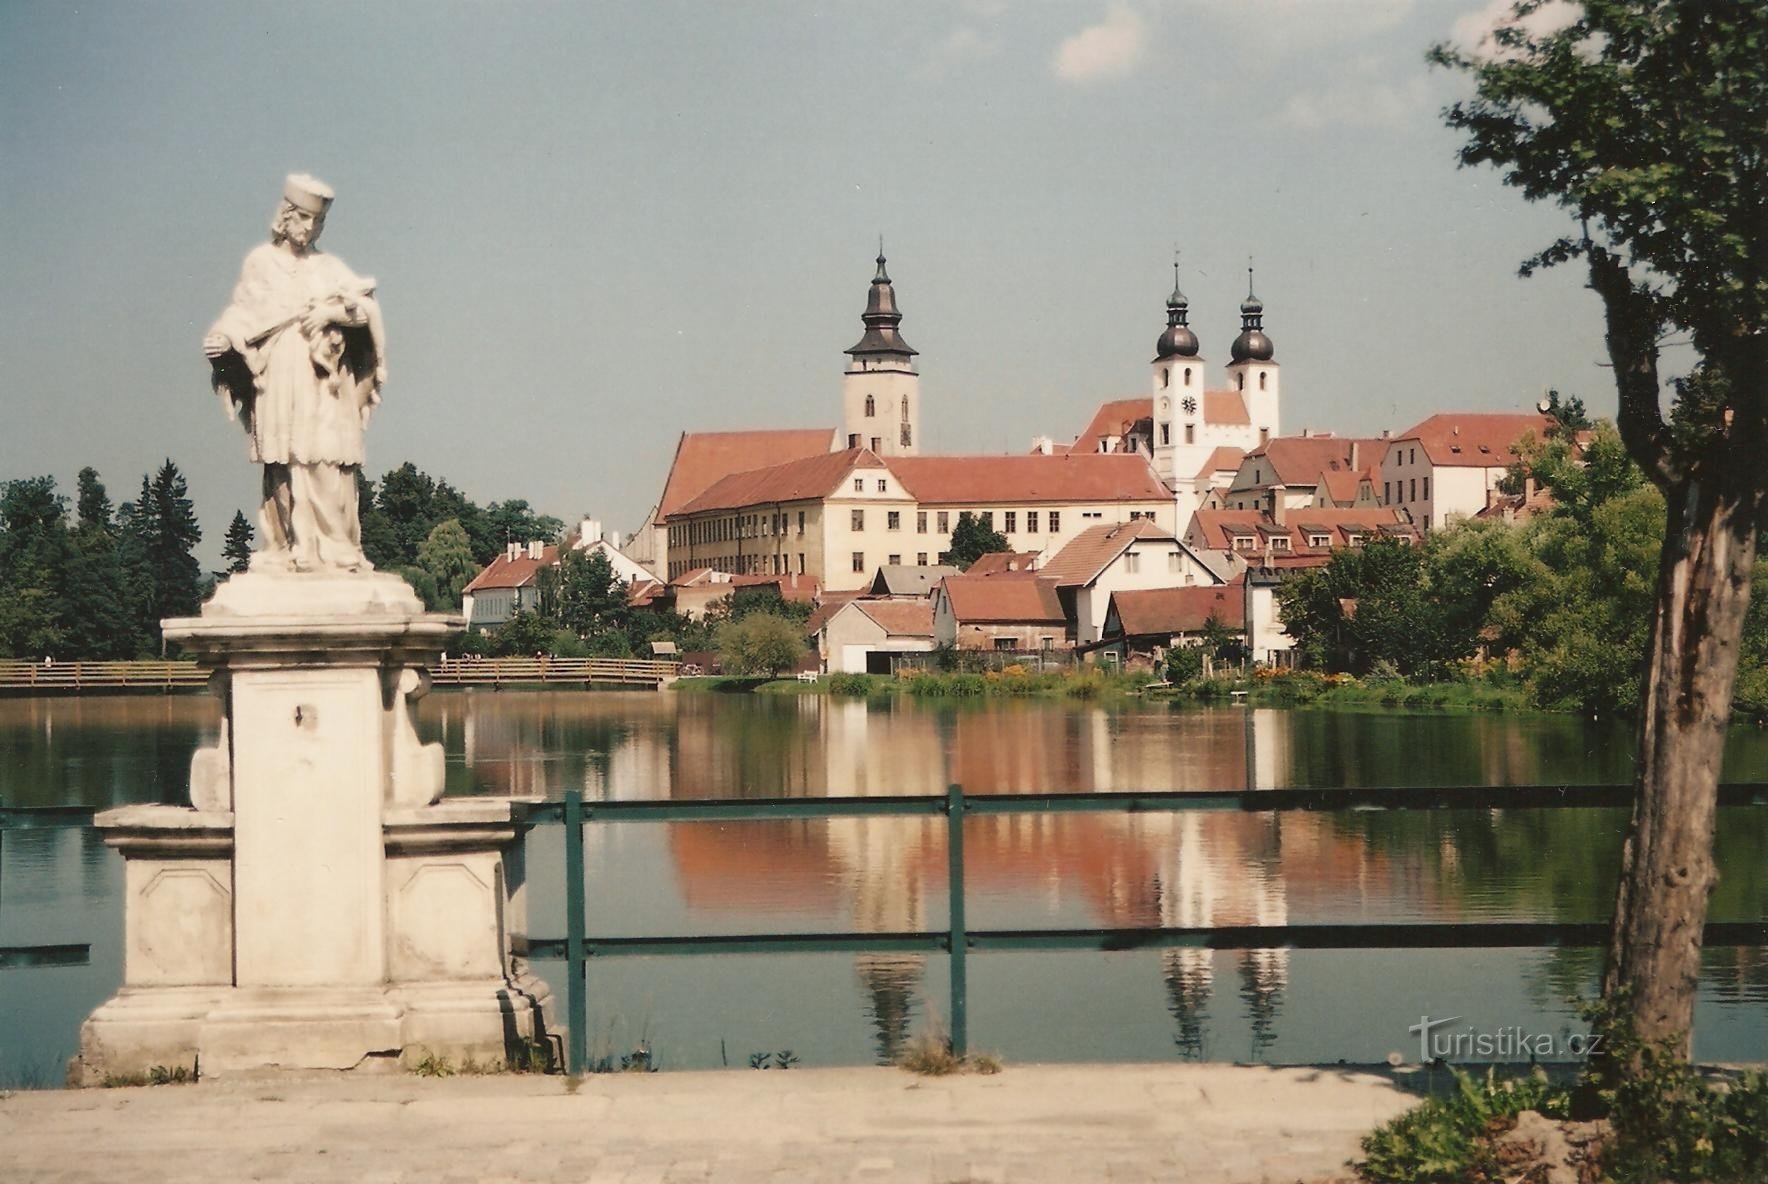 Telč - dam of Ulické Pond 2000